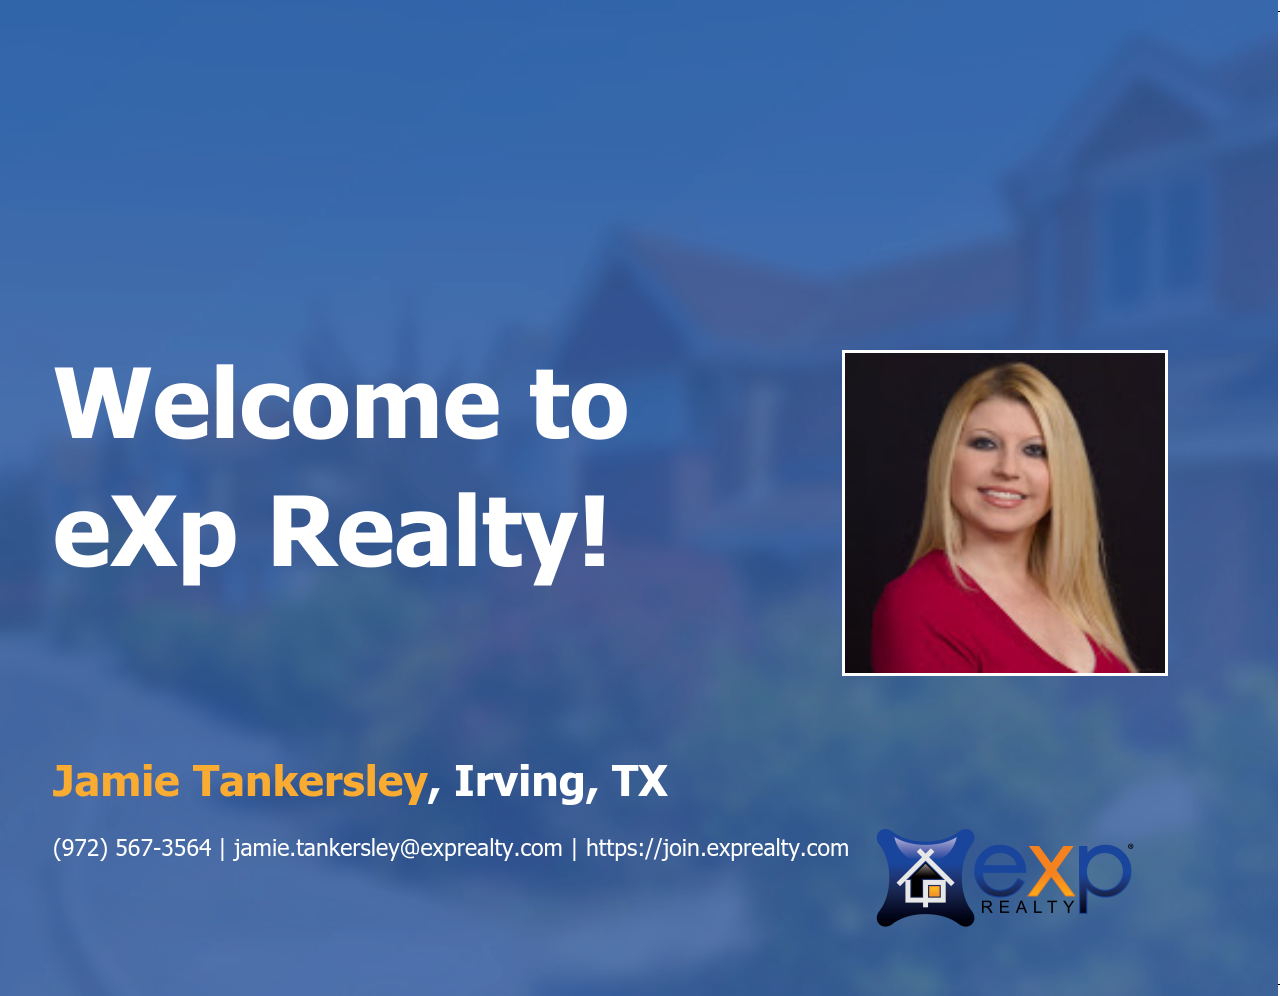 Jamie Tankersley Joined eXp Realty!